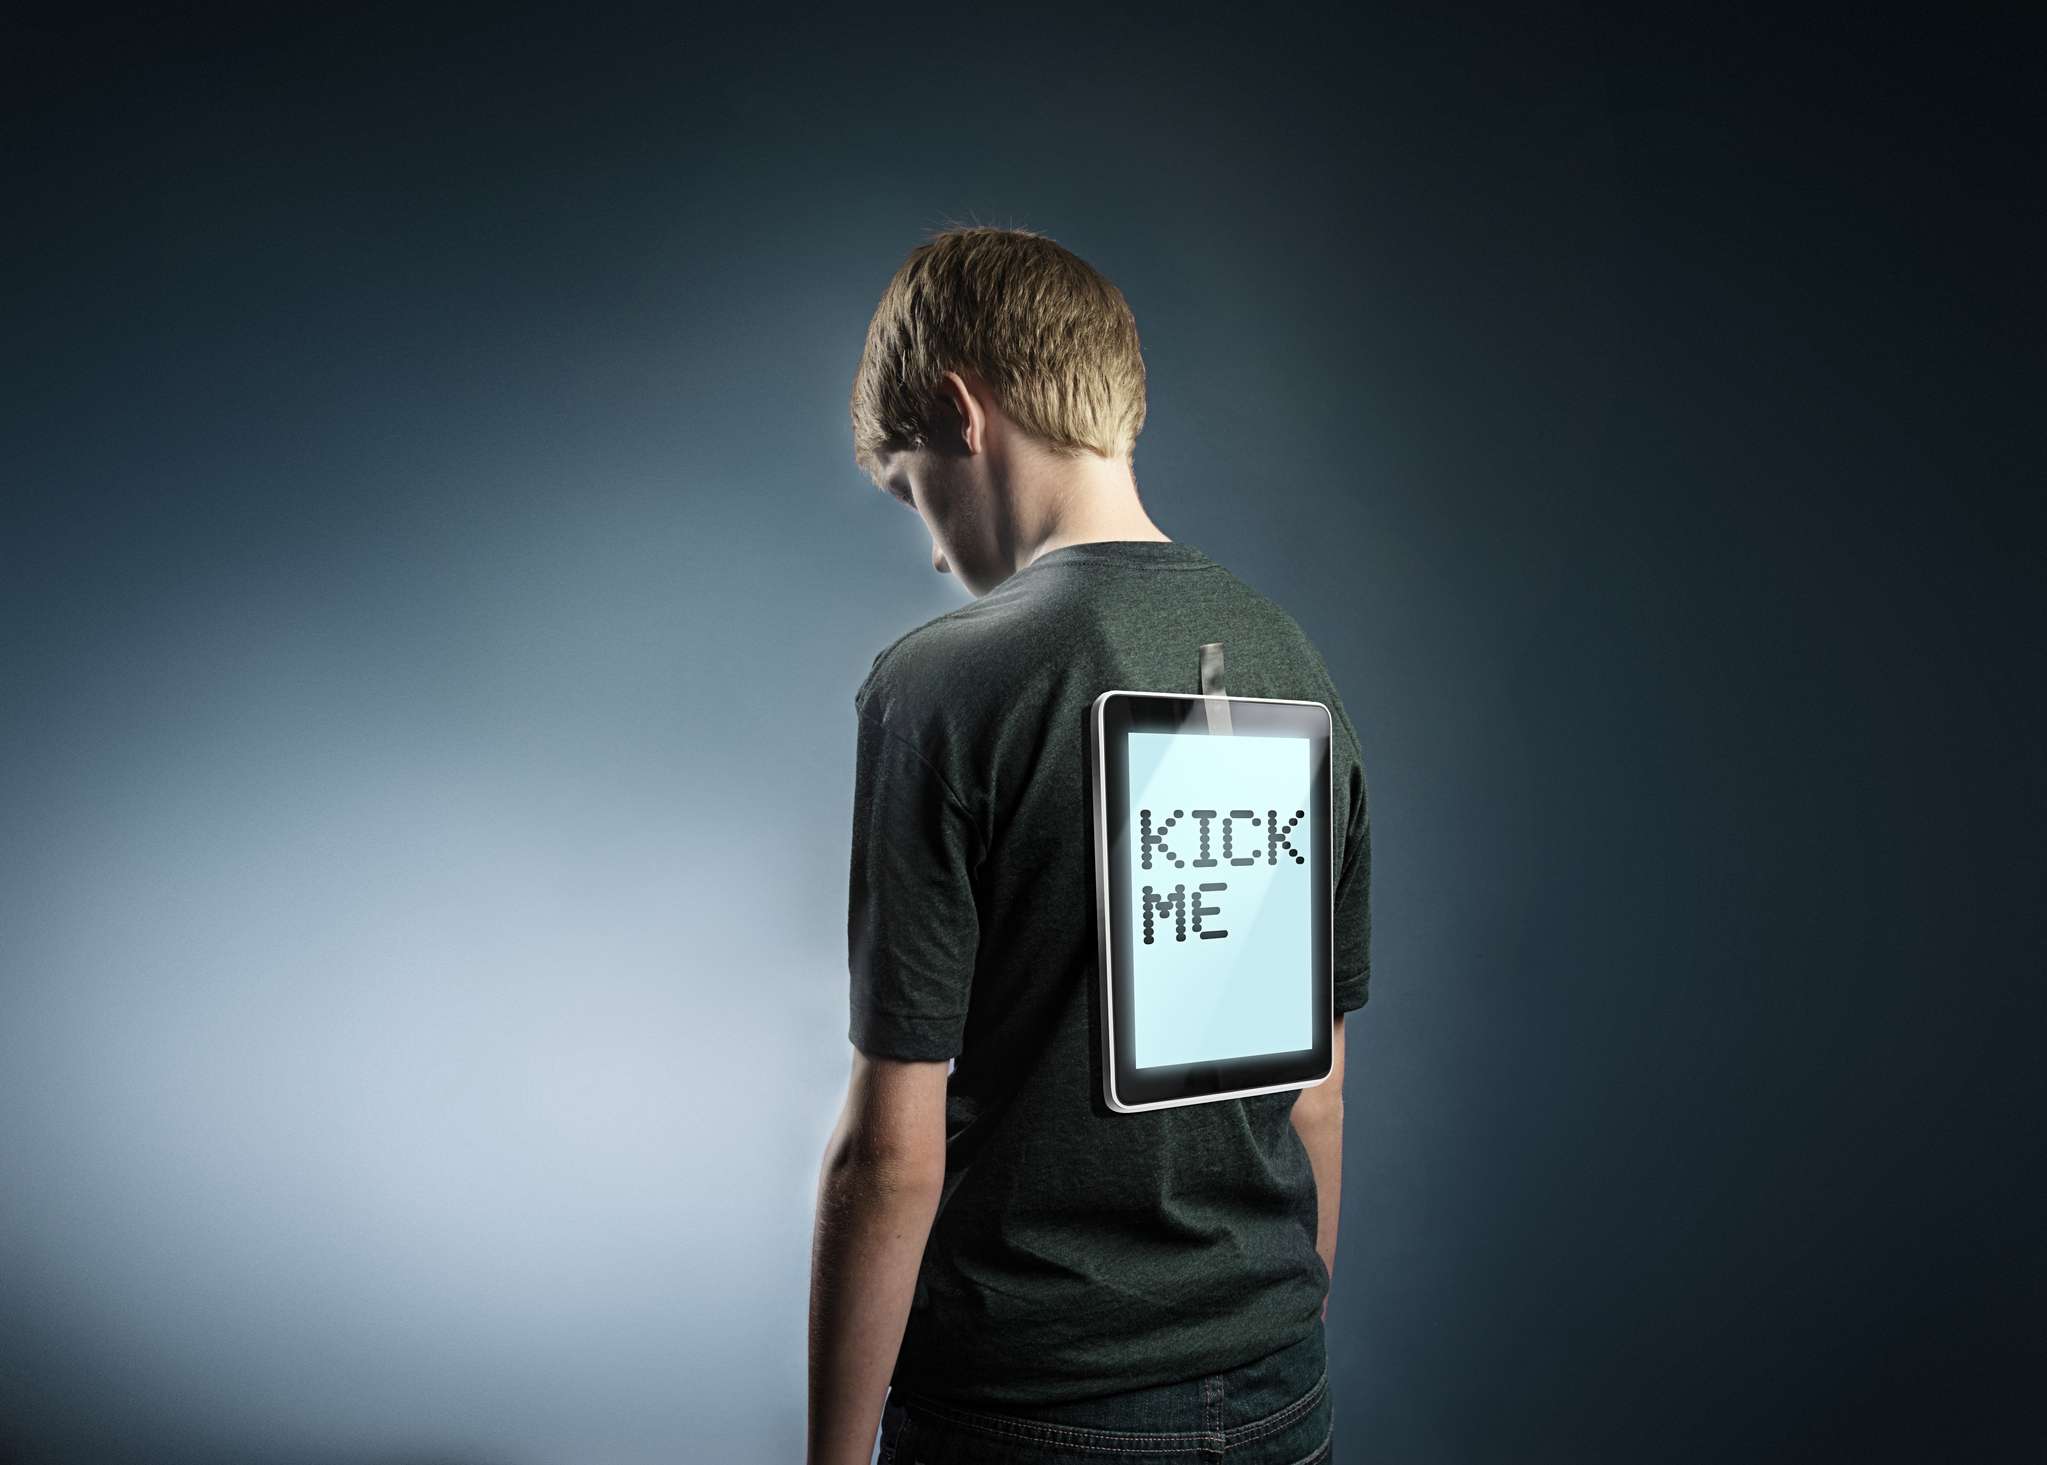 Een jonge tiener met een tablet op hun rug geplakt met de tekst "Kick me", om cyberpesten te vertegenwoordigen.